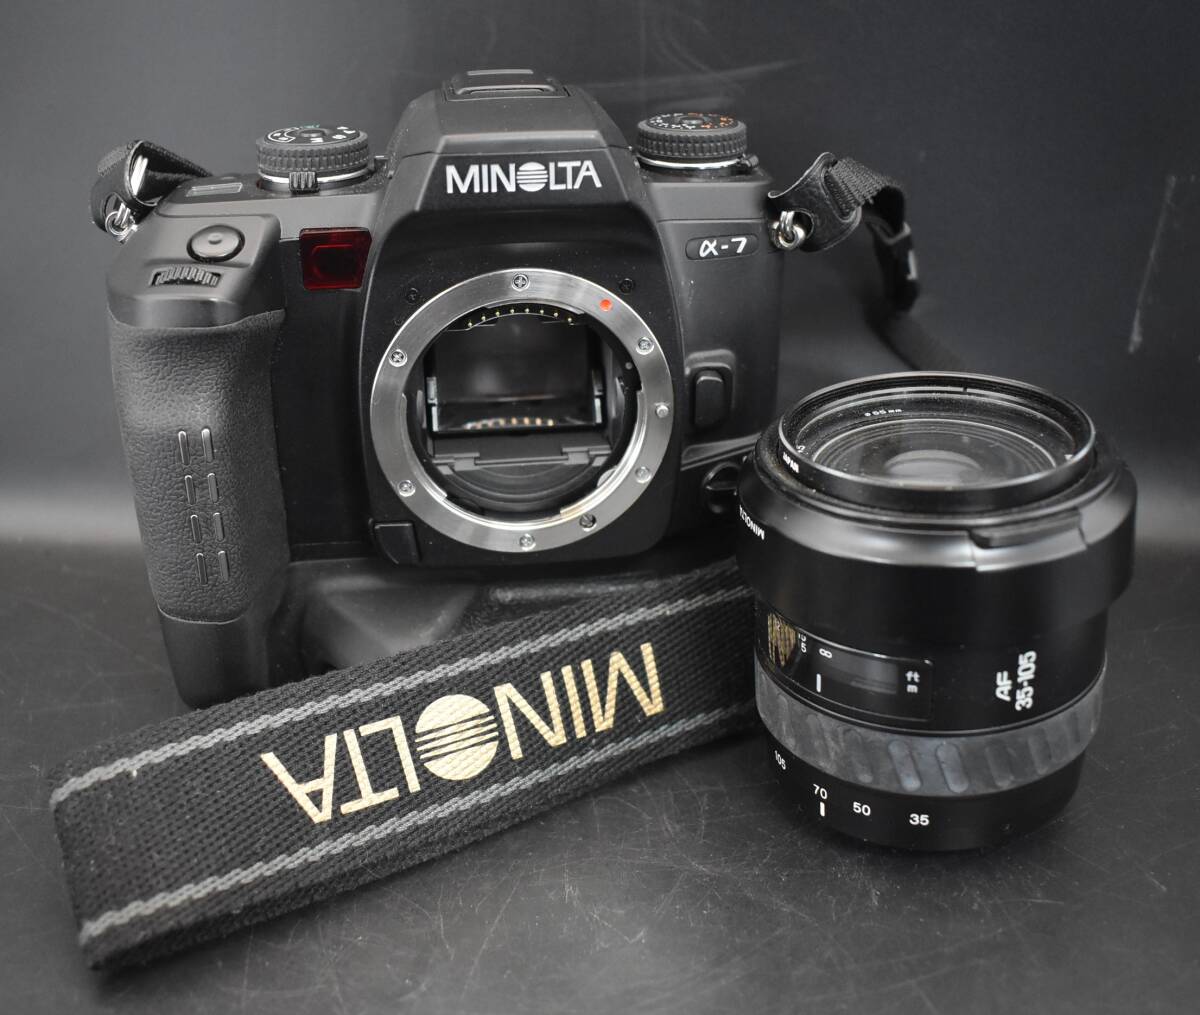 F4-47　MINOLTA ミノルタ a-7 フィルムカメラ レンズ AF ZOOM 35-105mm 1:3.5(22)-4.5 保管品